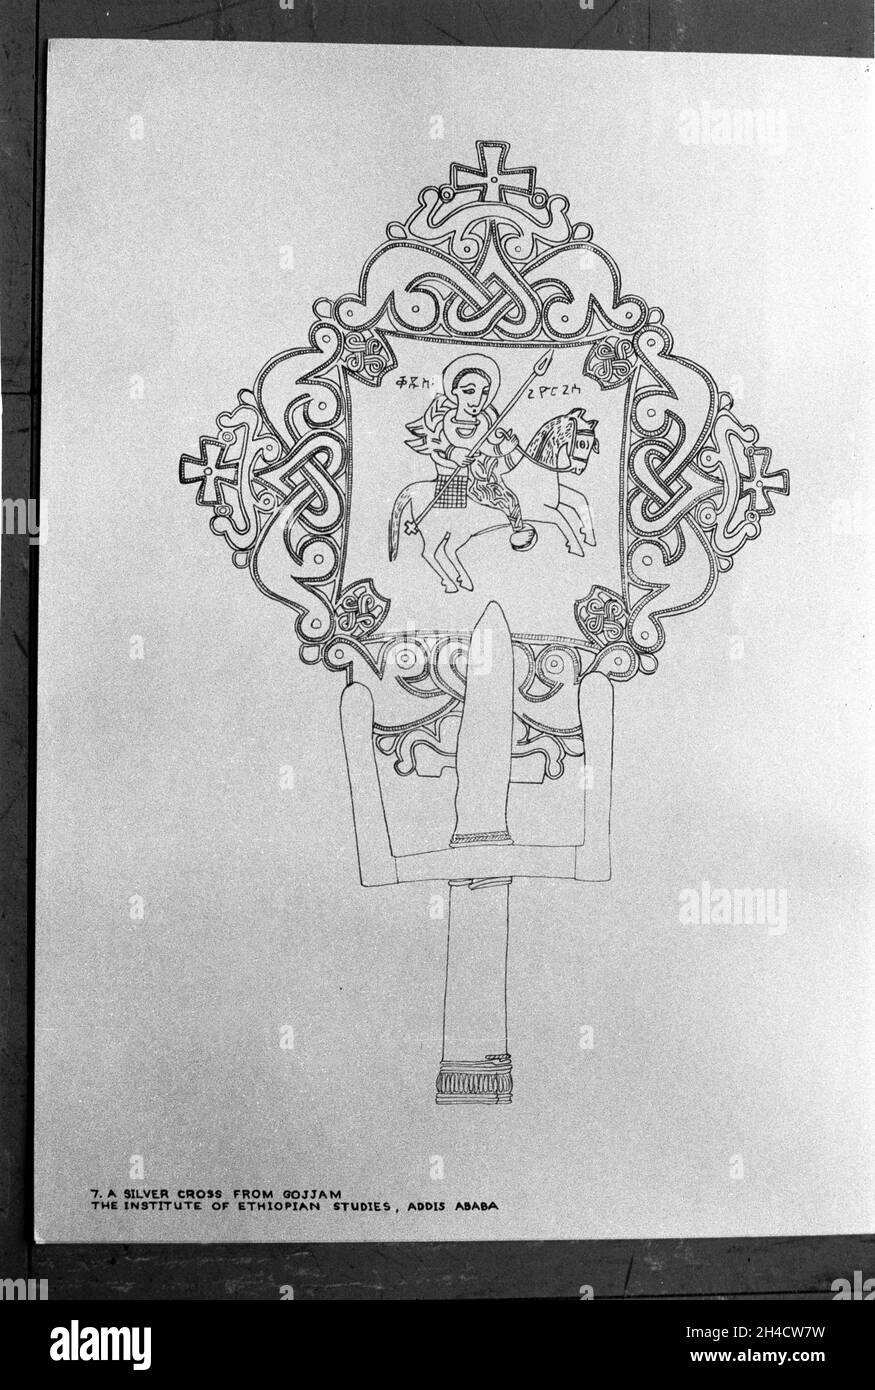 Afrika, Äthiopien, 1976. Addis Abba. Eine Zeichnung einer religiösen, filigranen Metalldecke zu einem Stabes. Ein Bronzekreuz aus Lalibela. Kopiert aus der Bibliothek des Instituts für äthiopische Studien. Stockfoto